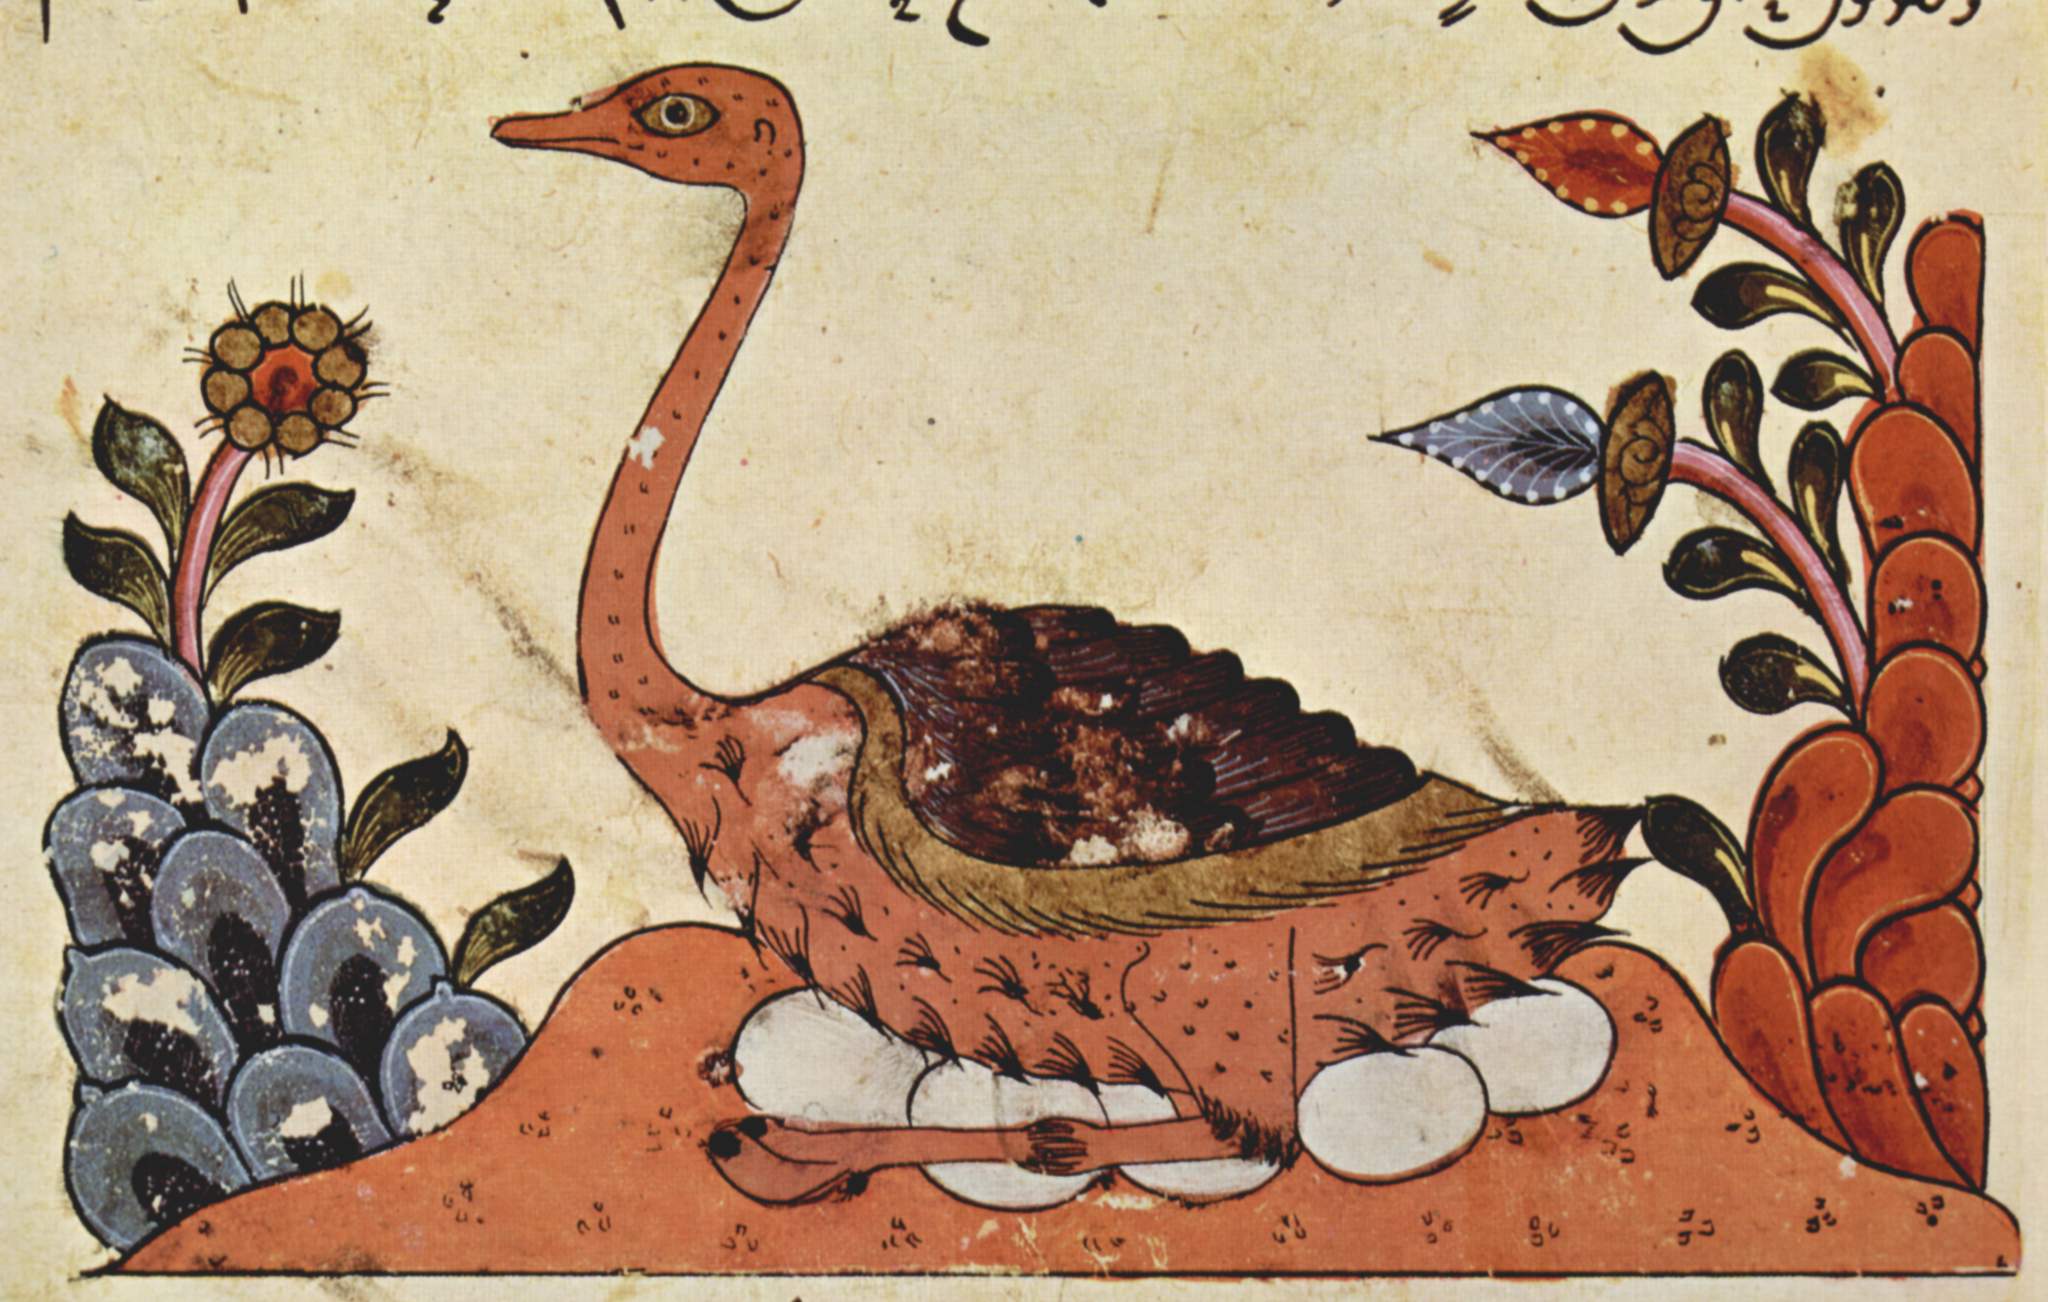 صورة لنعامة من كتاب "الحيوان" للجاحظ. رسم سوري من العام 1335. Quelle: Wikipedia